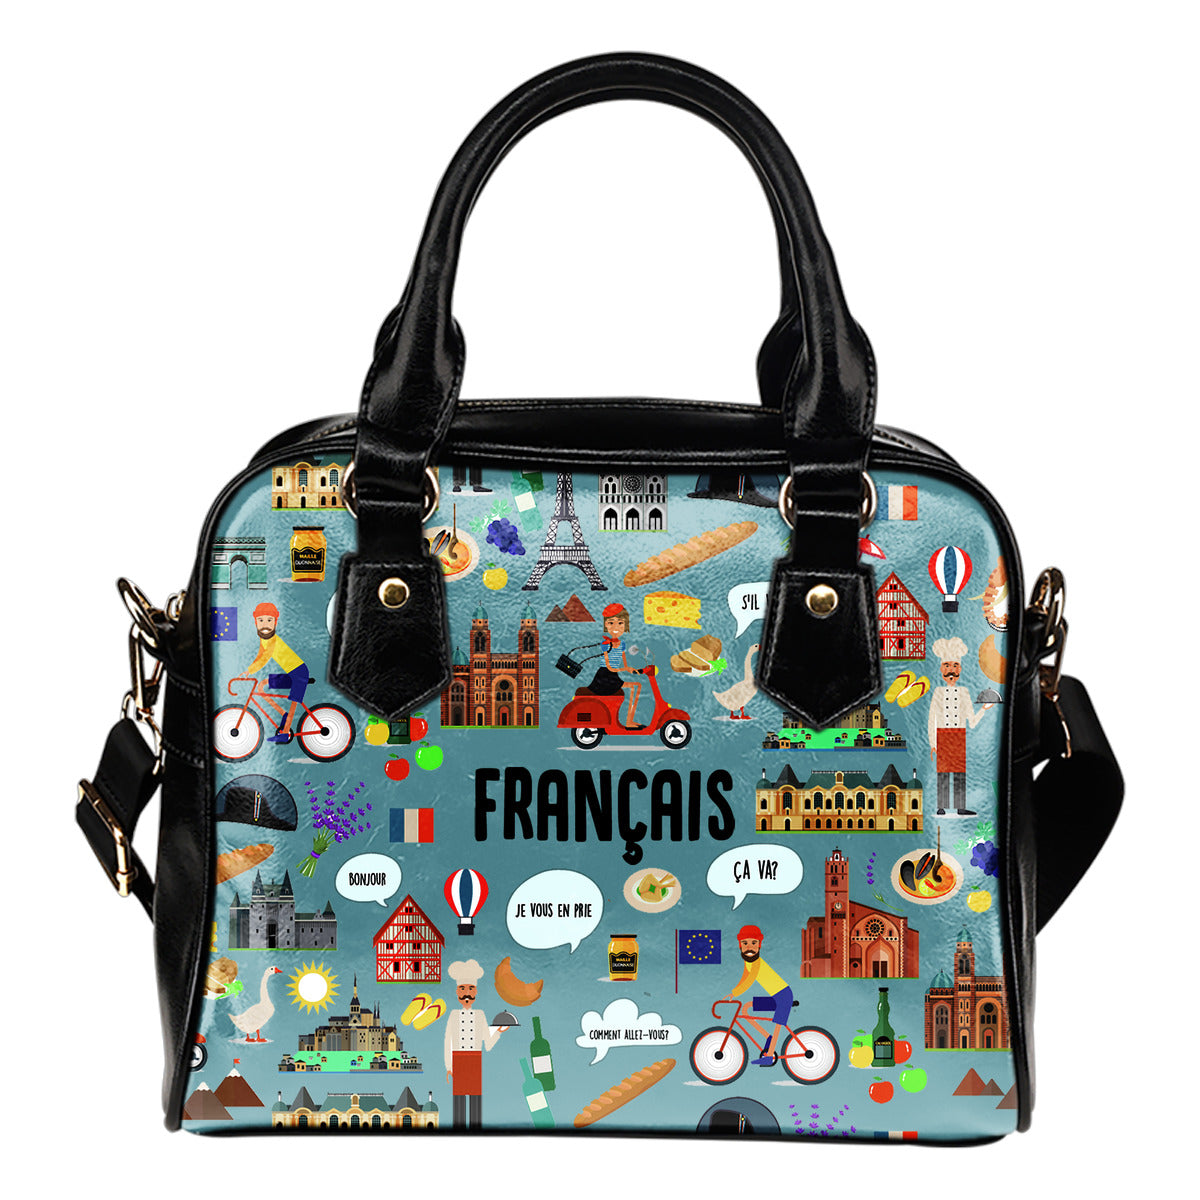 French Teacher Handbag